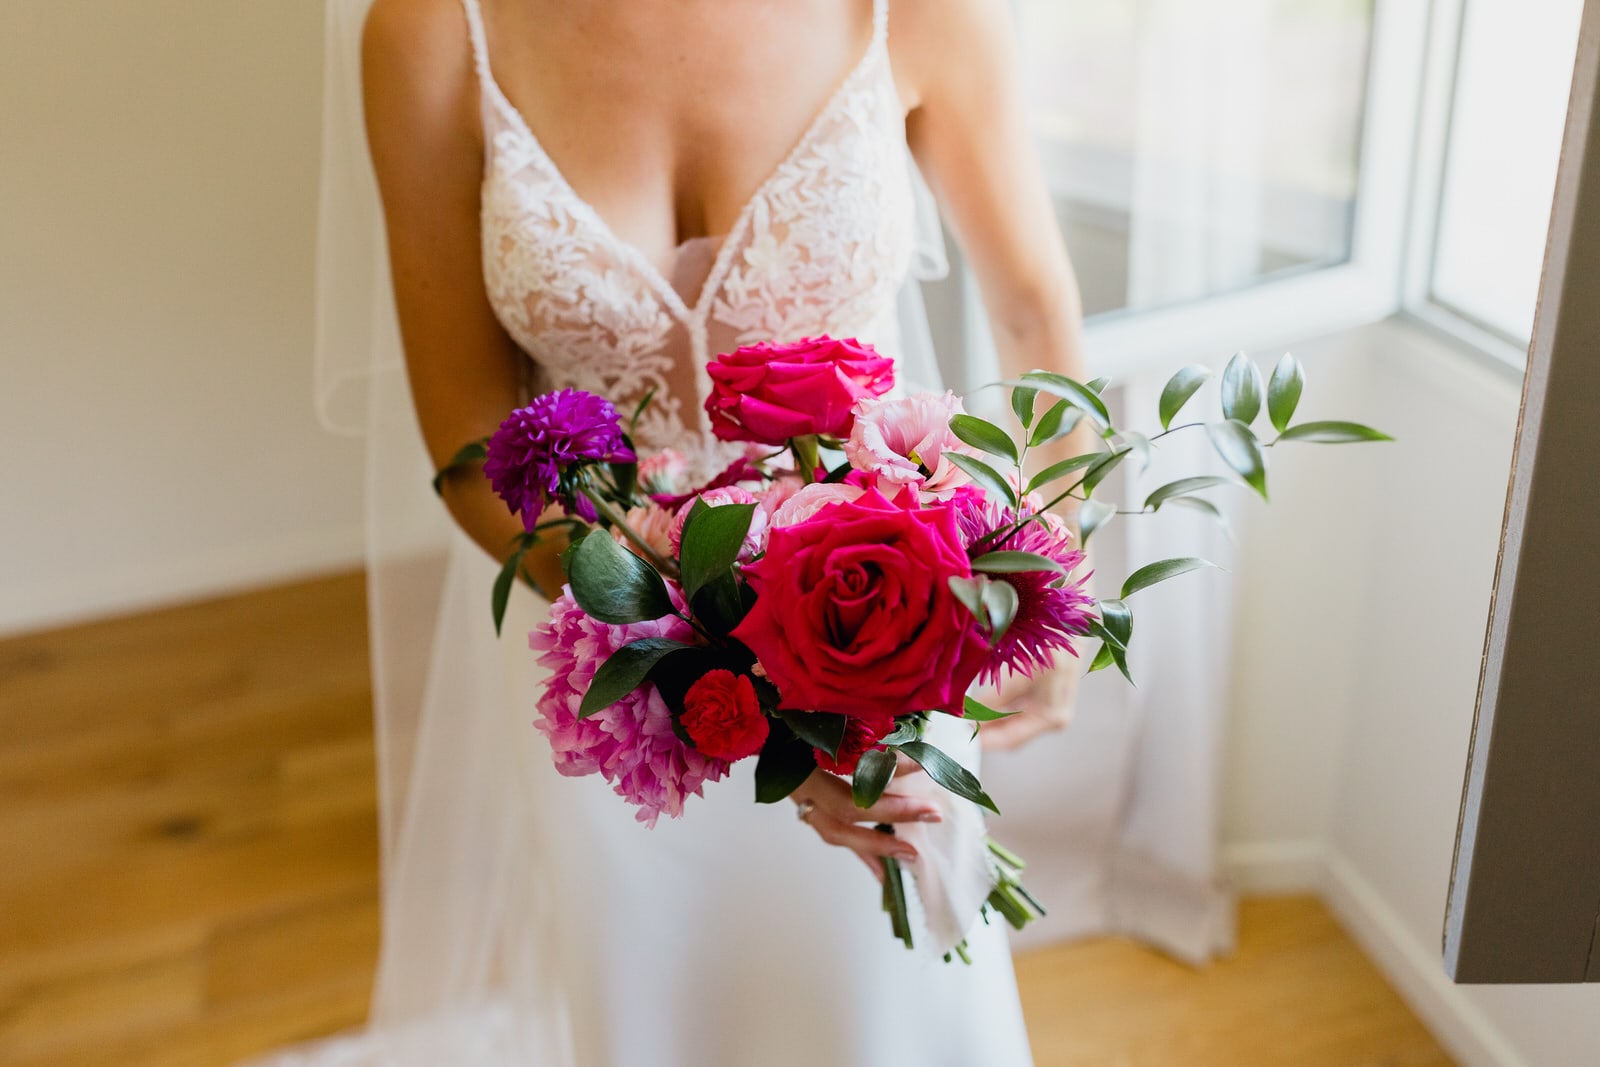 the magnificent bridal bouquet